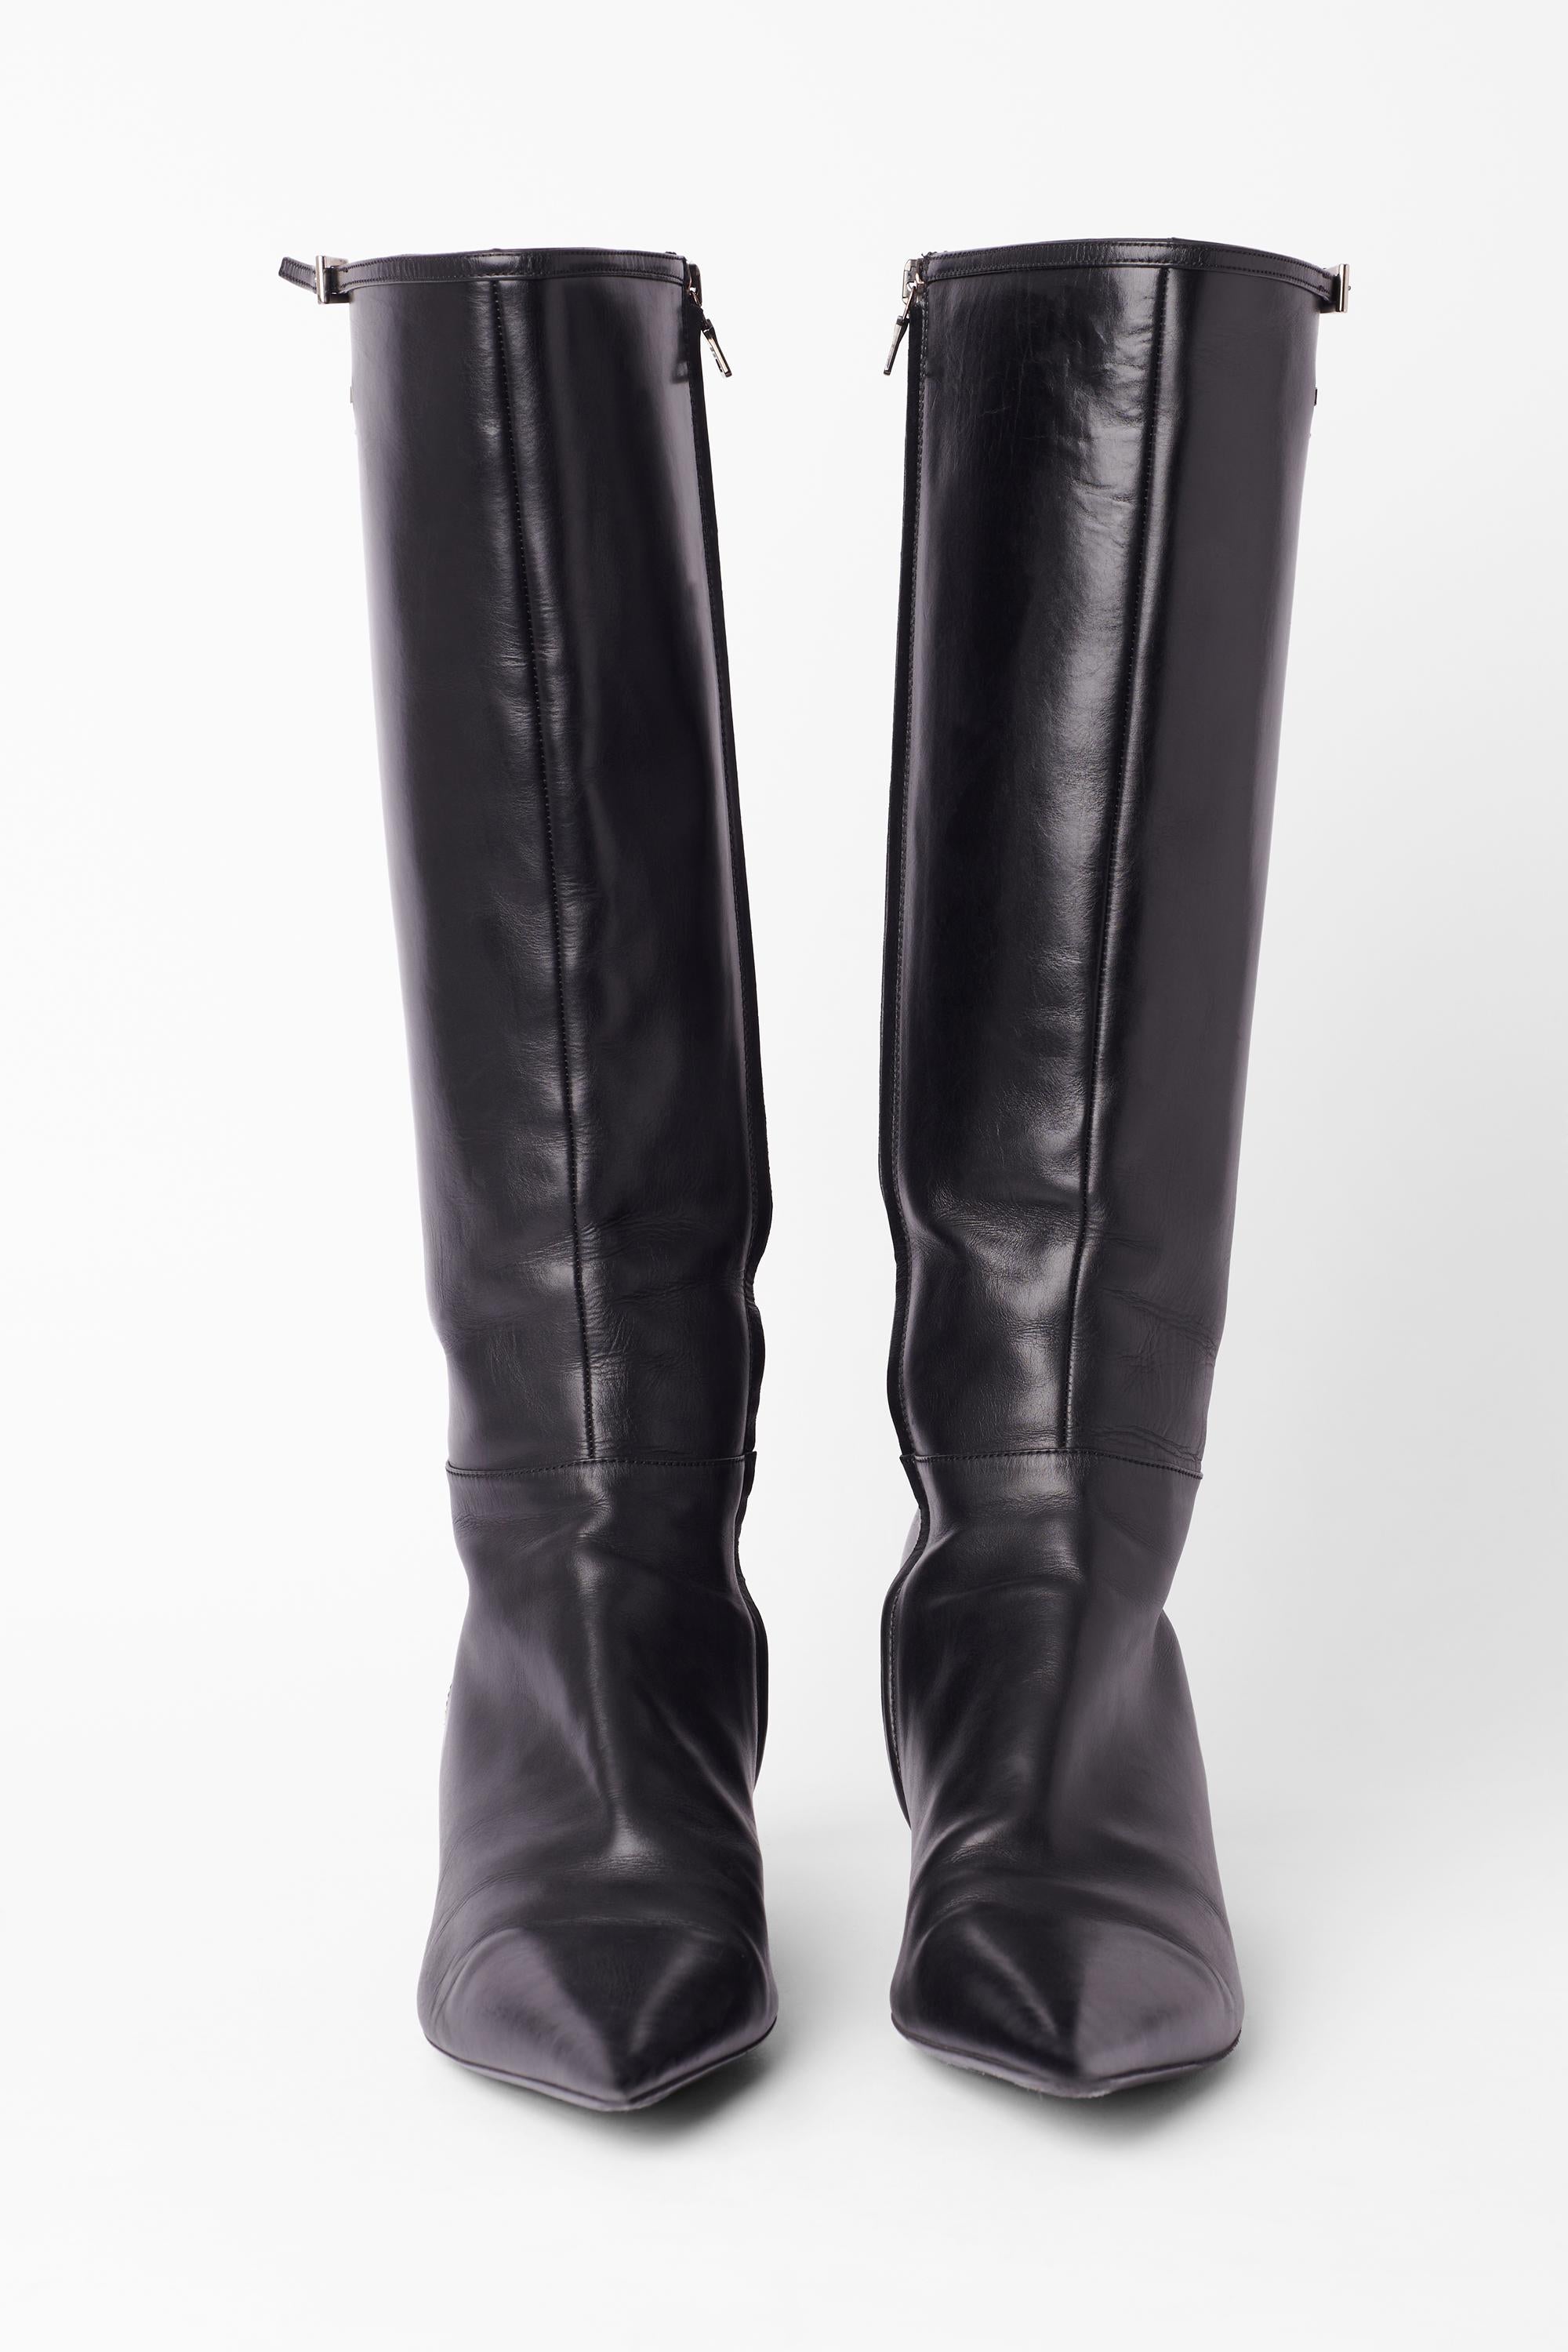 Vintage circa 2000's schwarzes Leder spitzen Zehen Stiefel von Prada. Sie haben einen Kitten-Heels-Stil, dünnes Leder und eine silberne Schnalle auf der Oberseite, das silberne Prada-Logo ist auf jedem Schuh eingraviert. Wird mit einem schwarzen